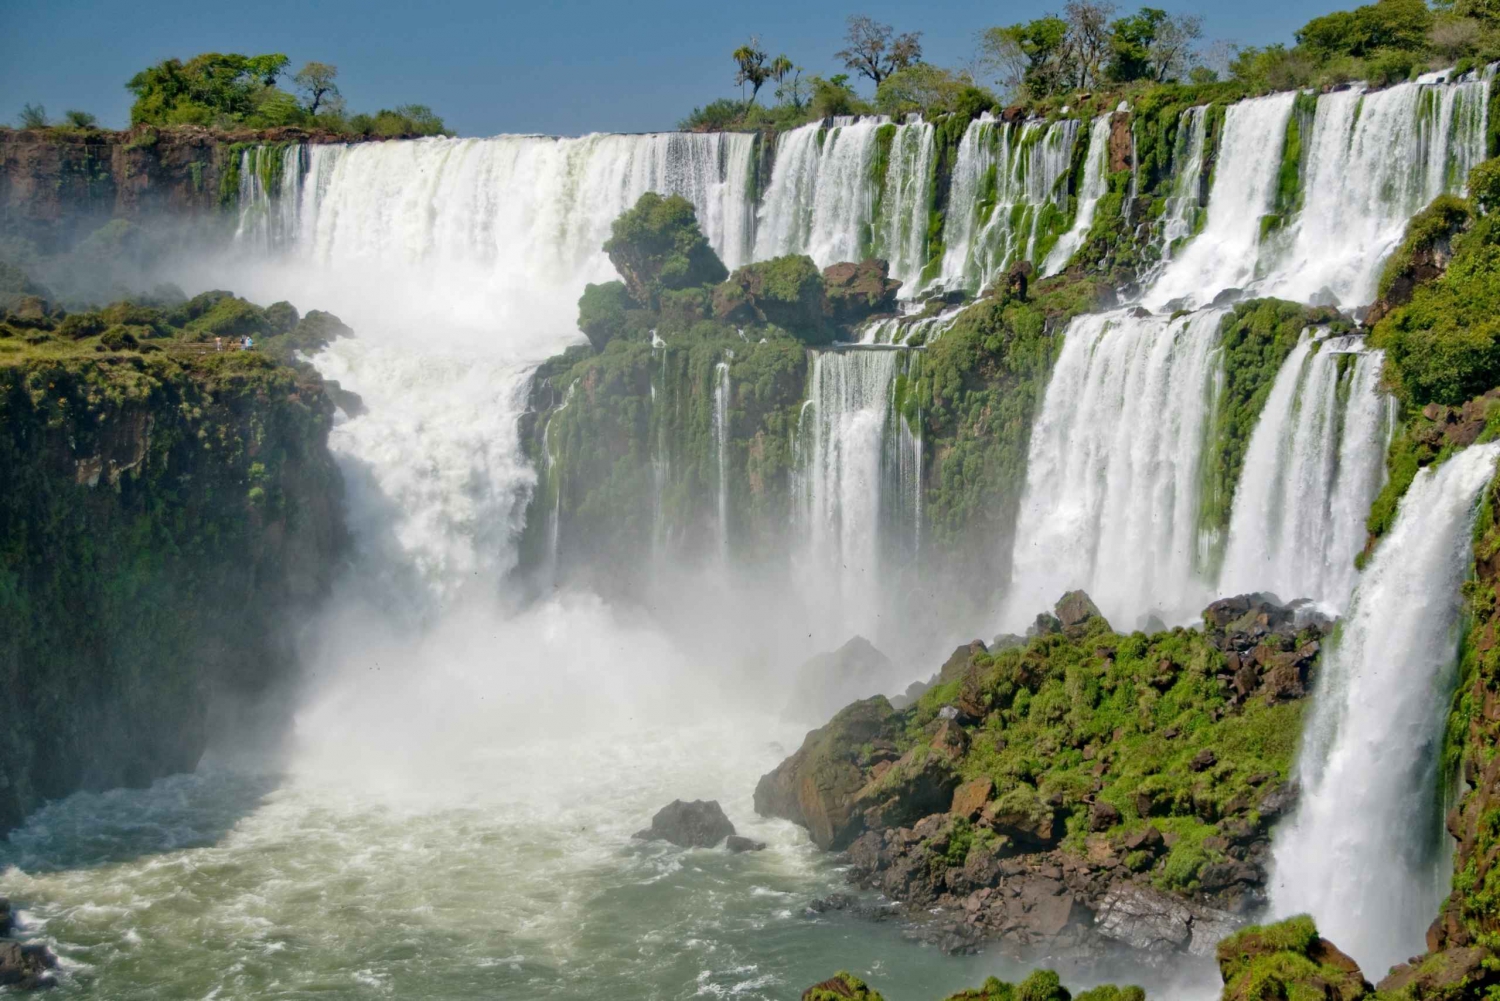 Puerto Iguazu: lato argentino delle cascate